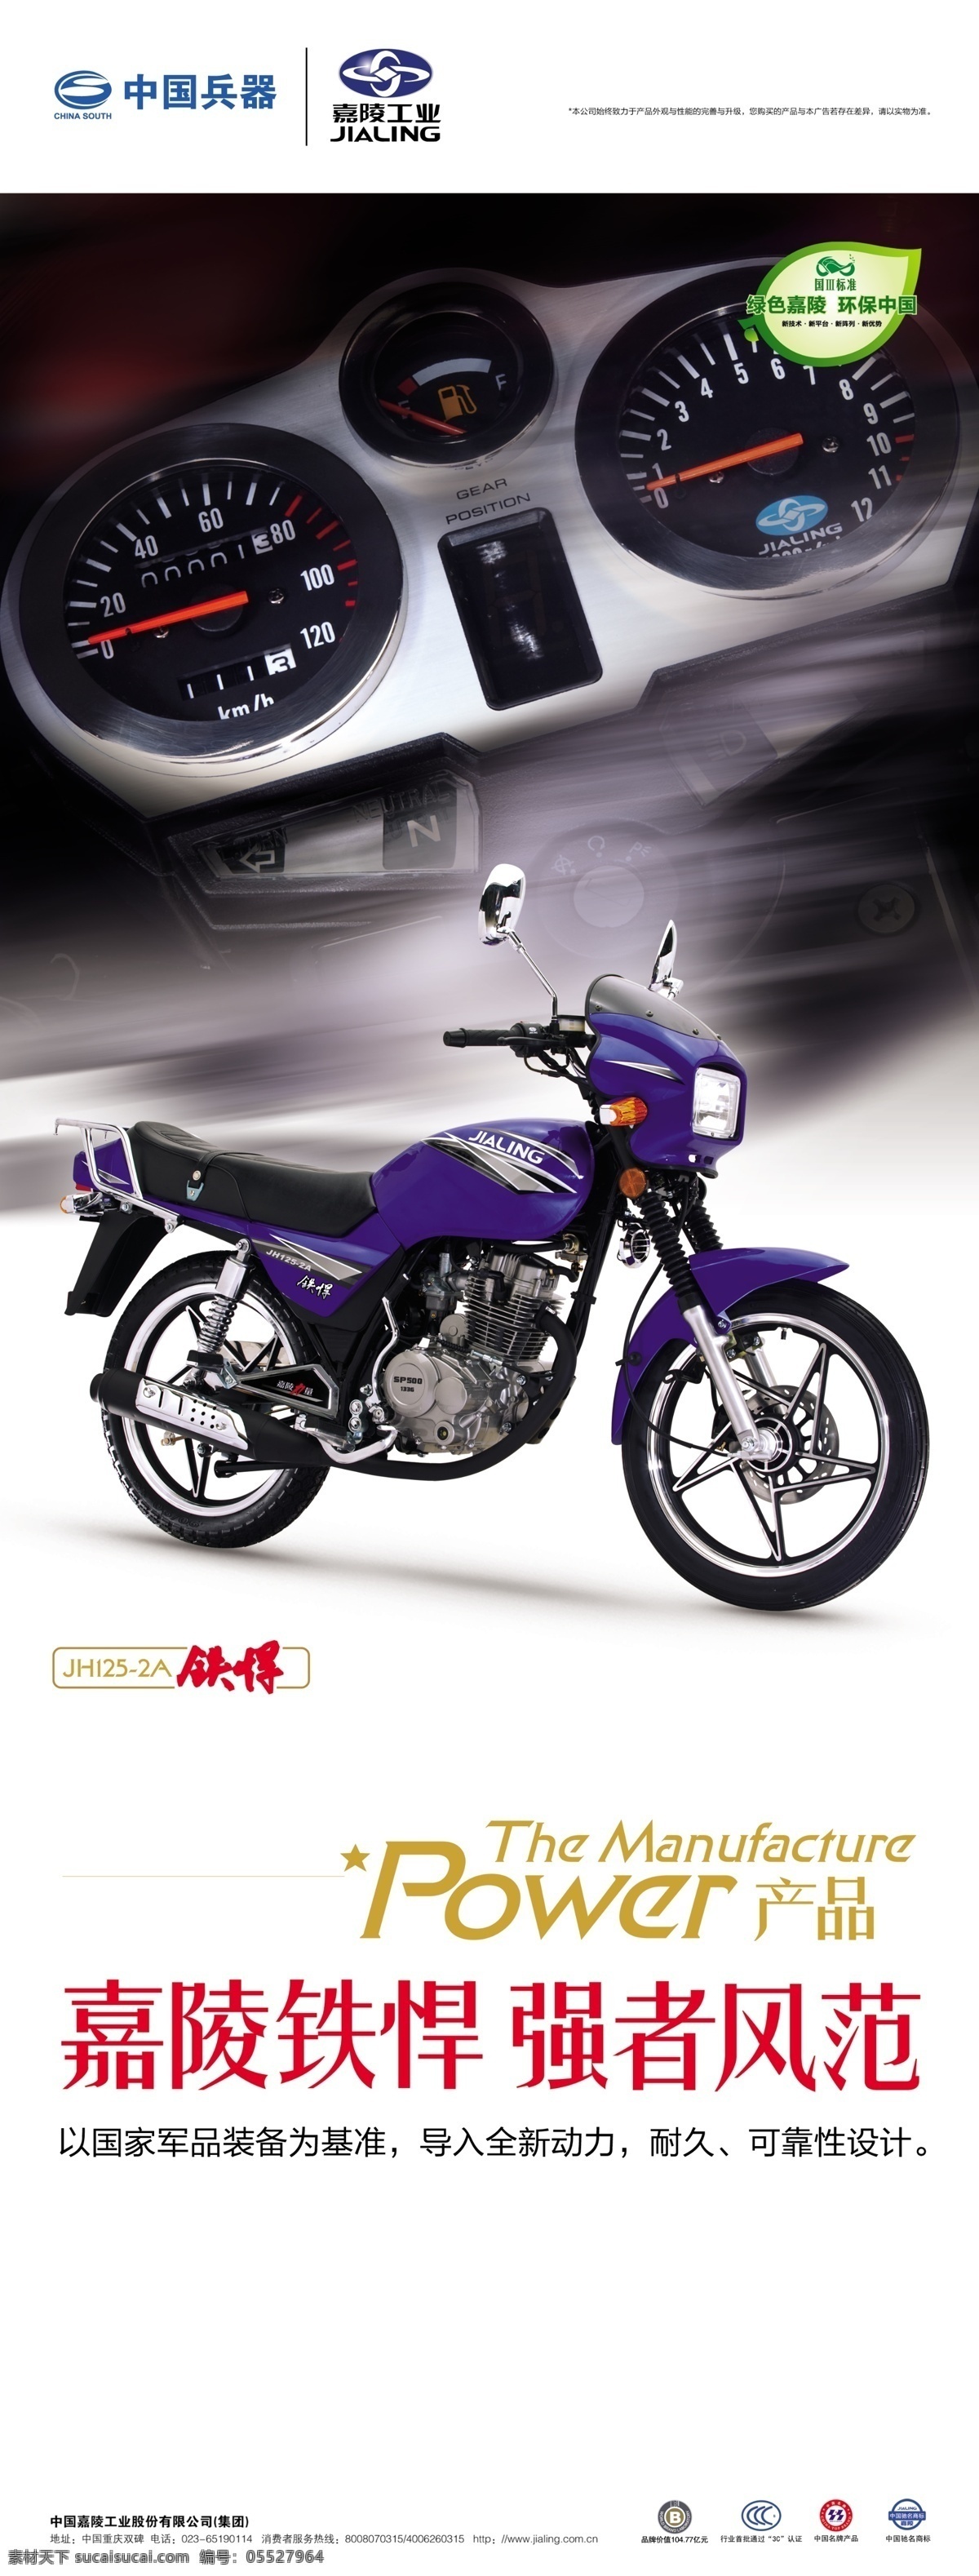 嘉陵摩托 x展架 易拉宝 摩托车 中国兵器 logo 商标 铁悍 广告设计模板 源文件